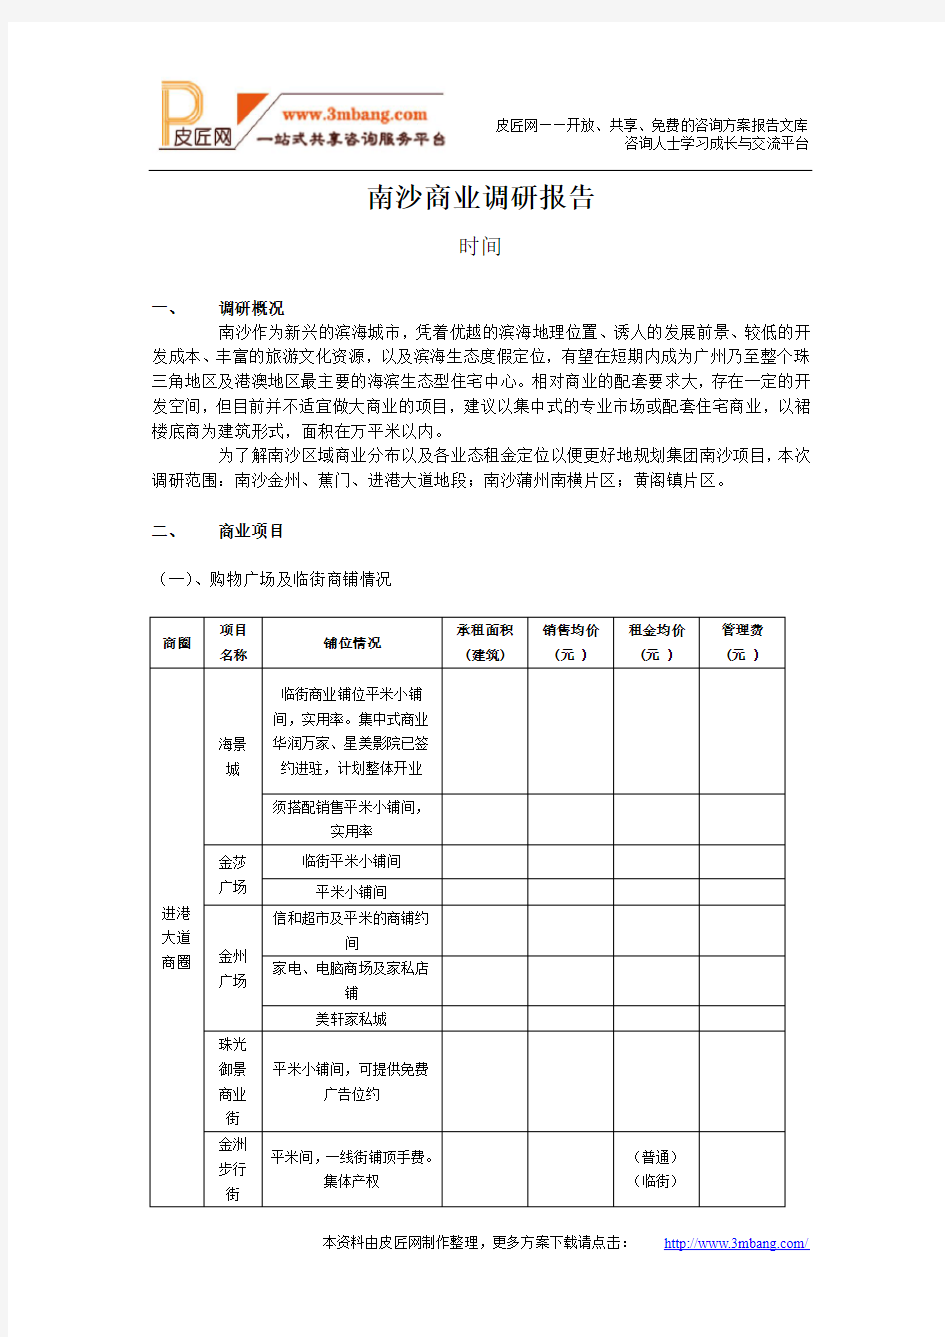 1广州南沙商业市场调研报告